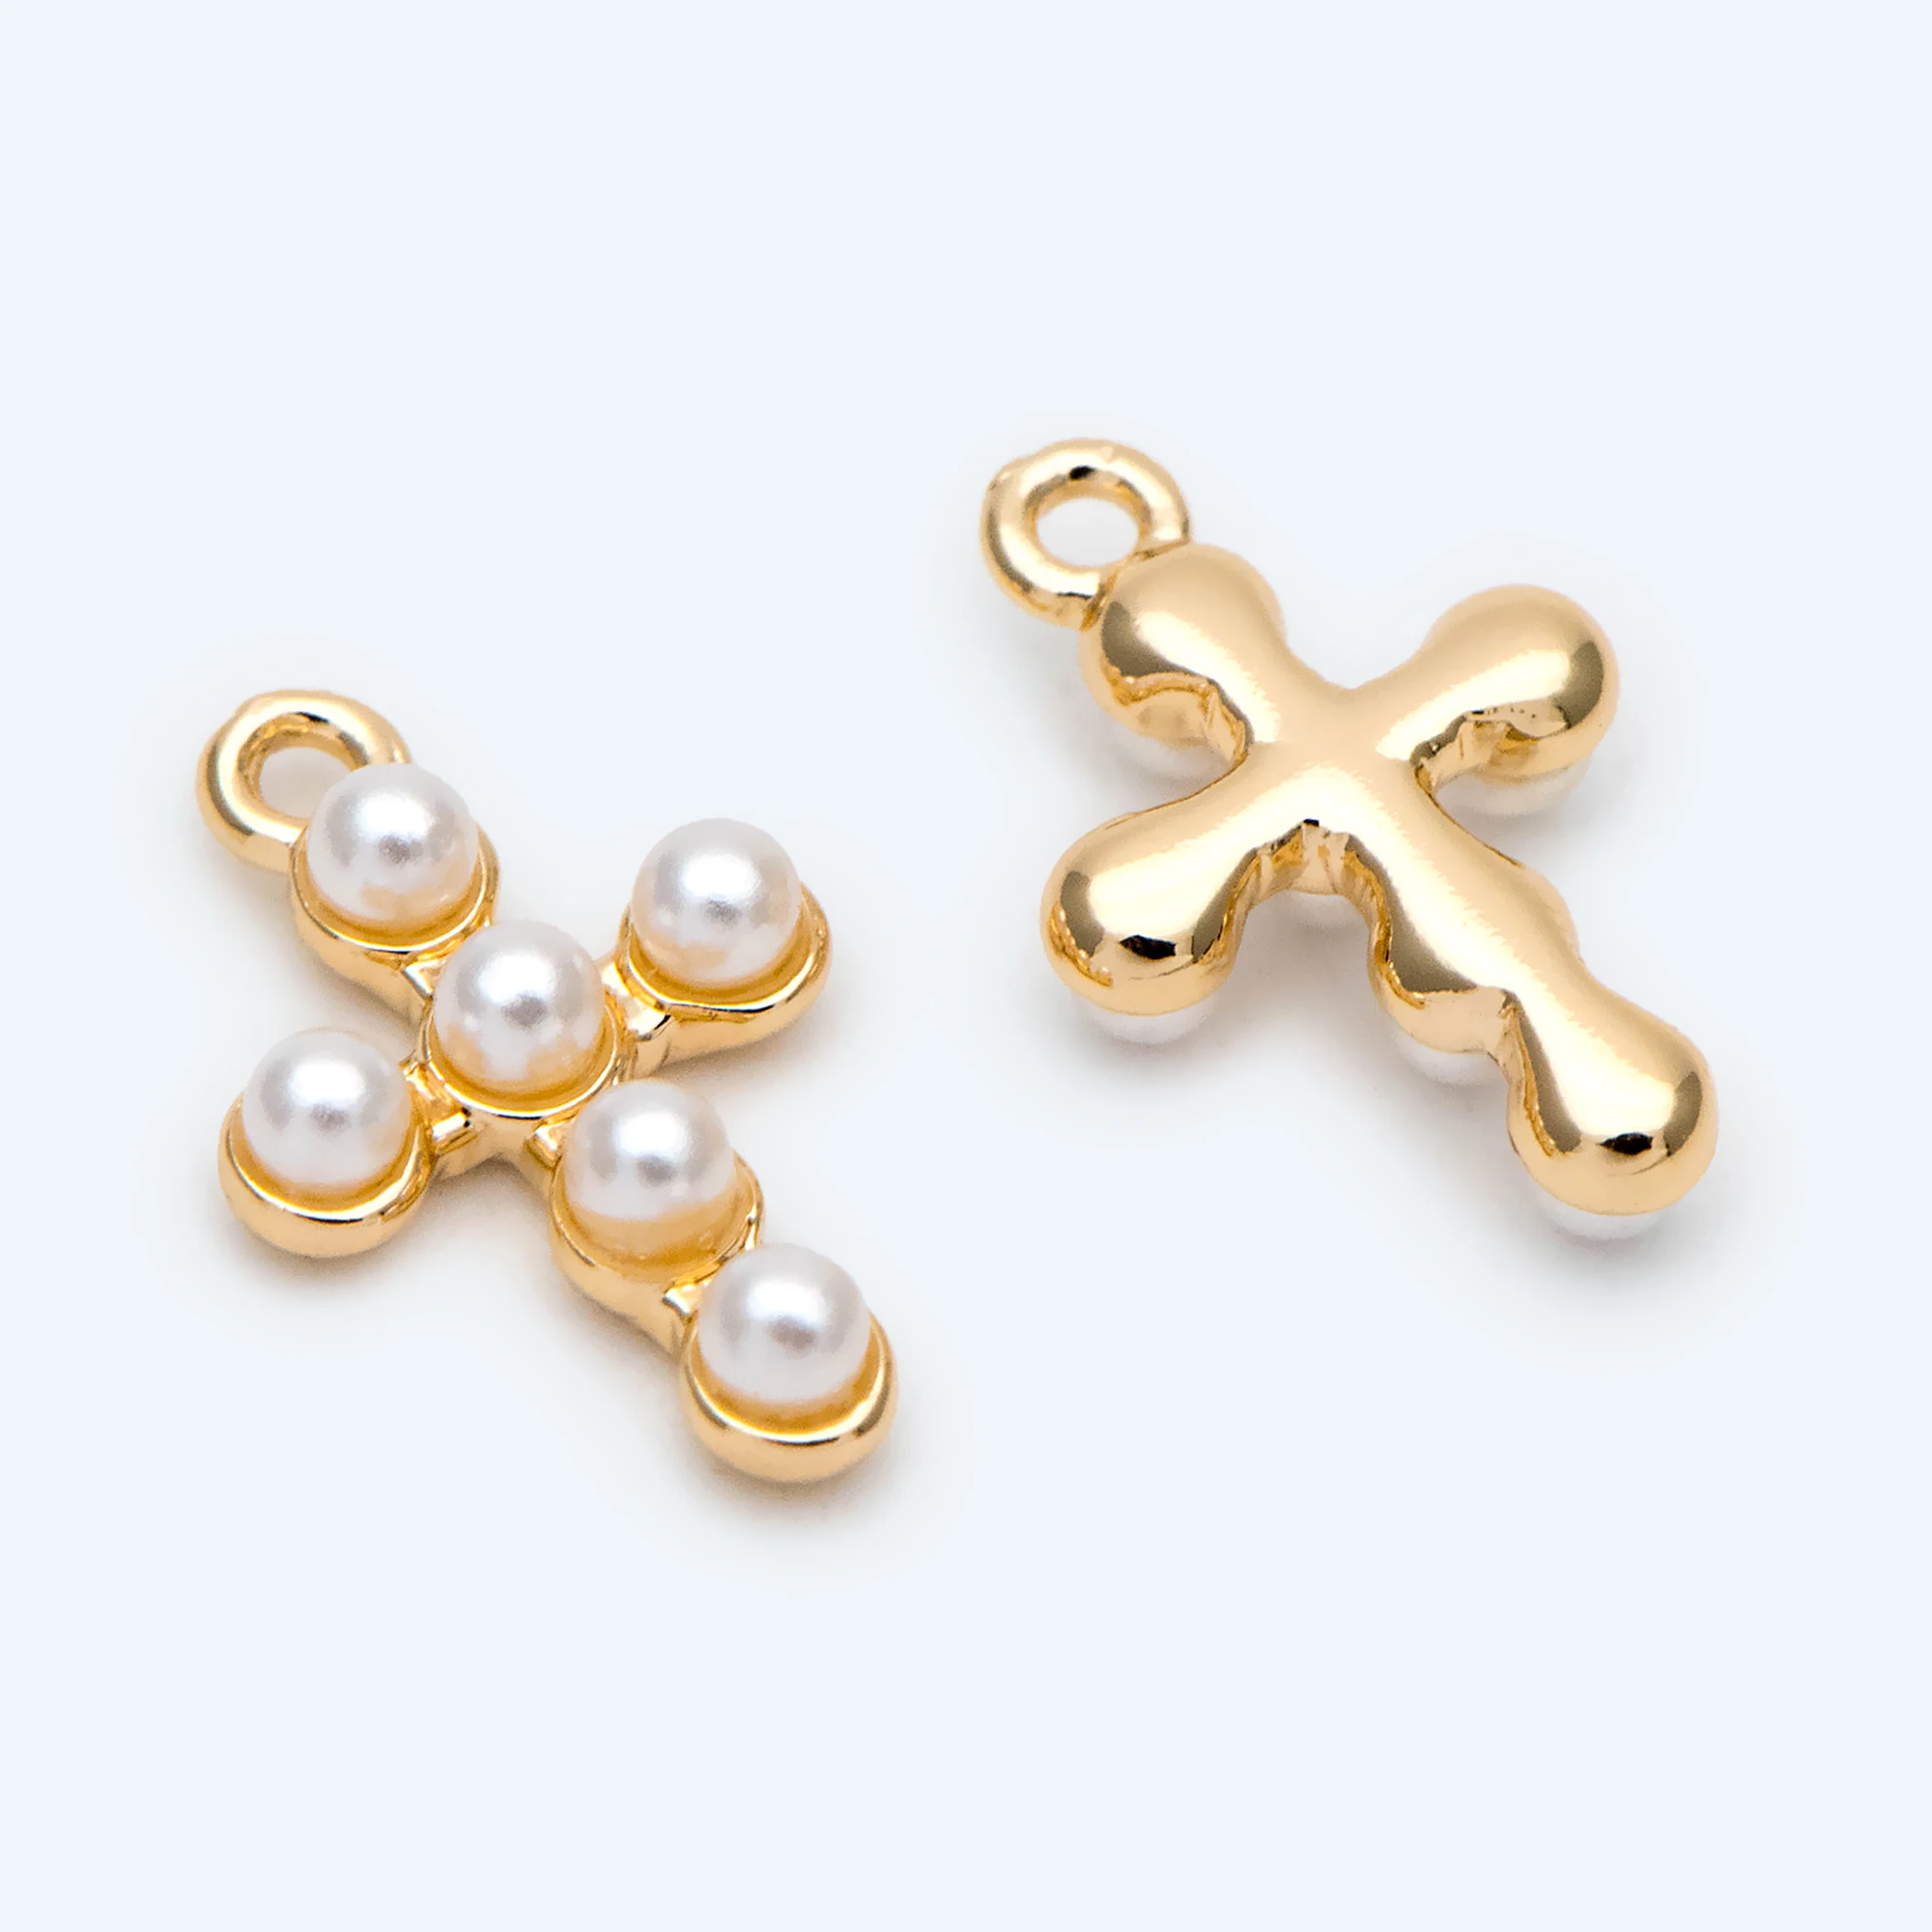 4 stücke Faux Perle Gepflasterte Kreuz Charme, Kleine Kreuz Anhänger, für Halskette Ohrring Schmuck Finden Zubehör (GB-2731)